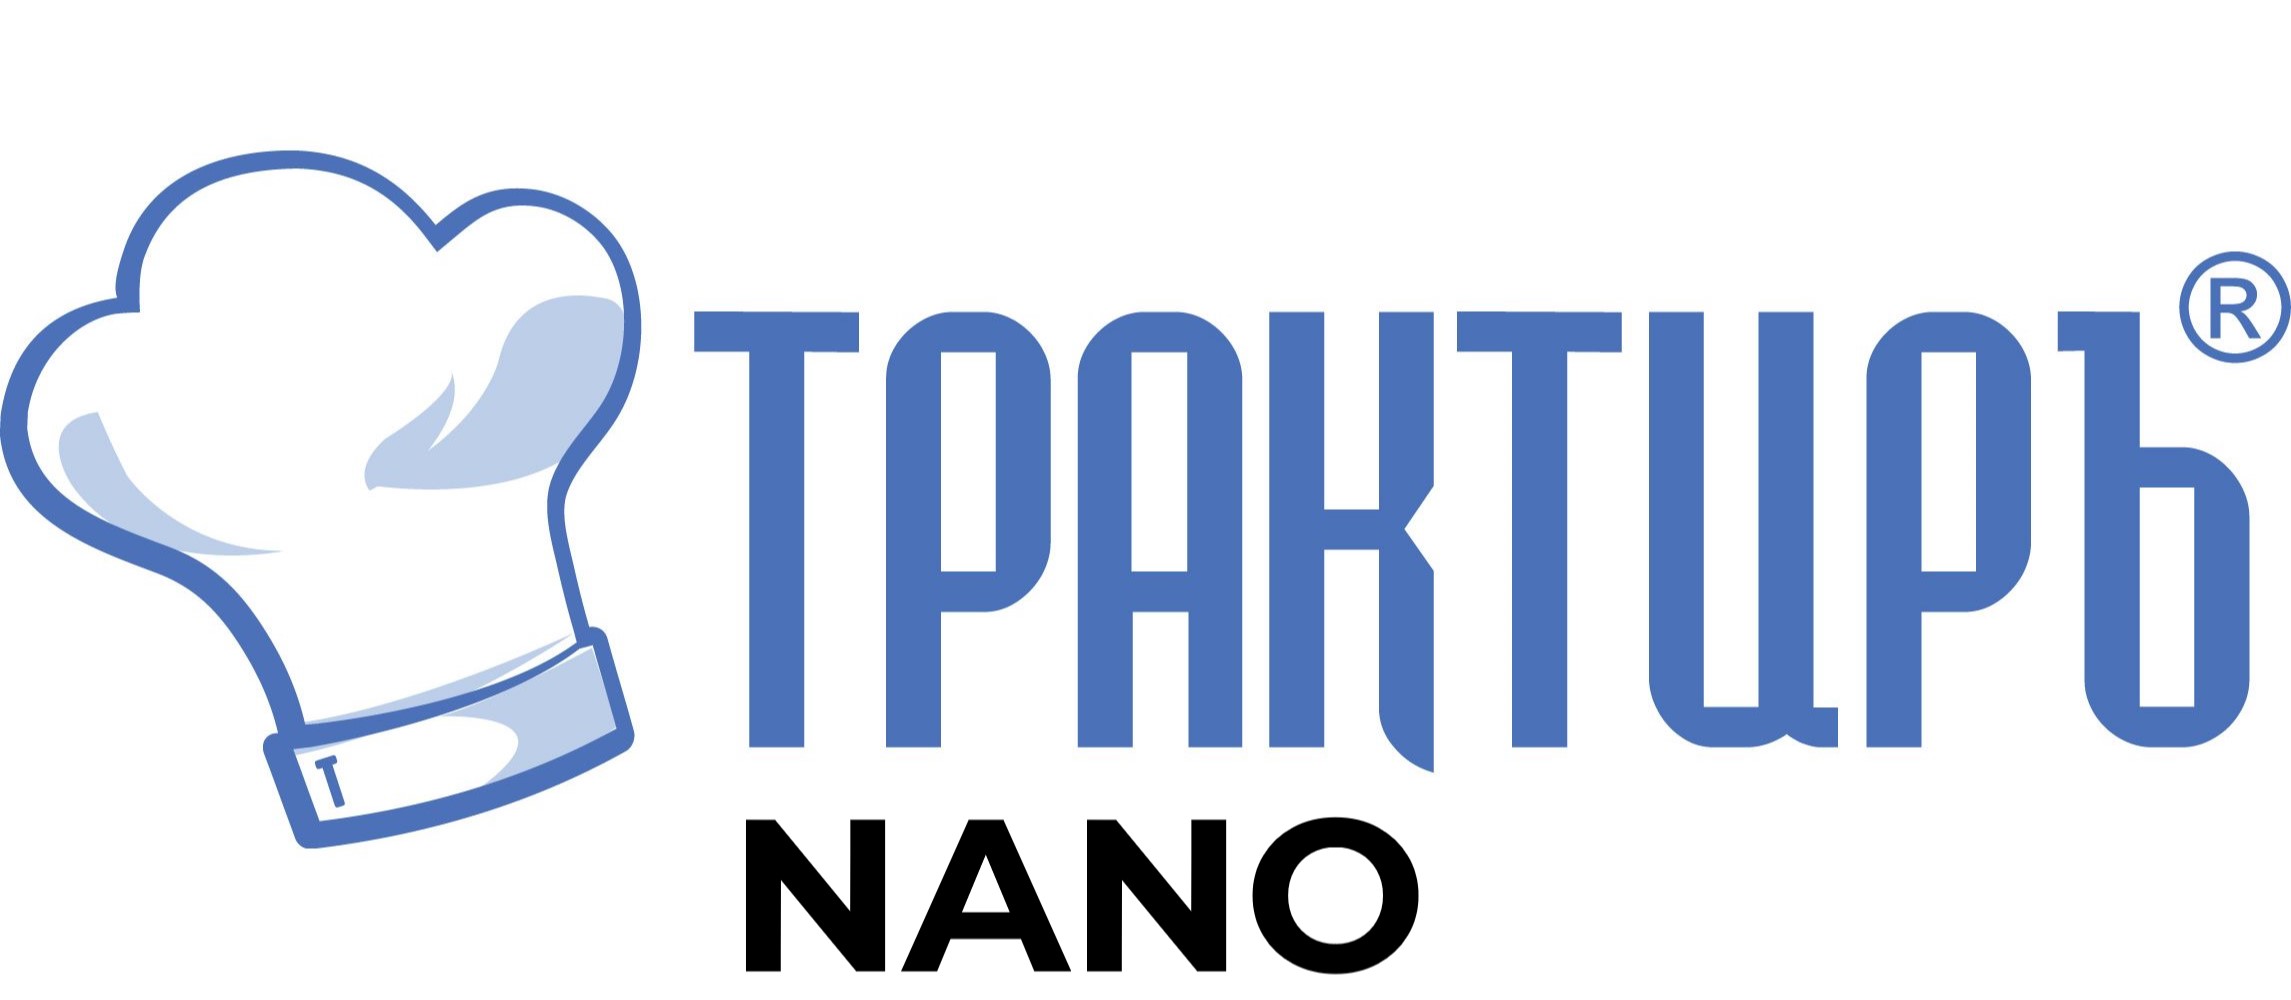 Конфигурация Трактиръ: Nano (Основная поставка) в Сыктывкаре